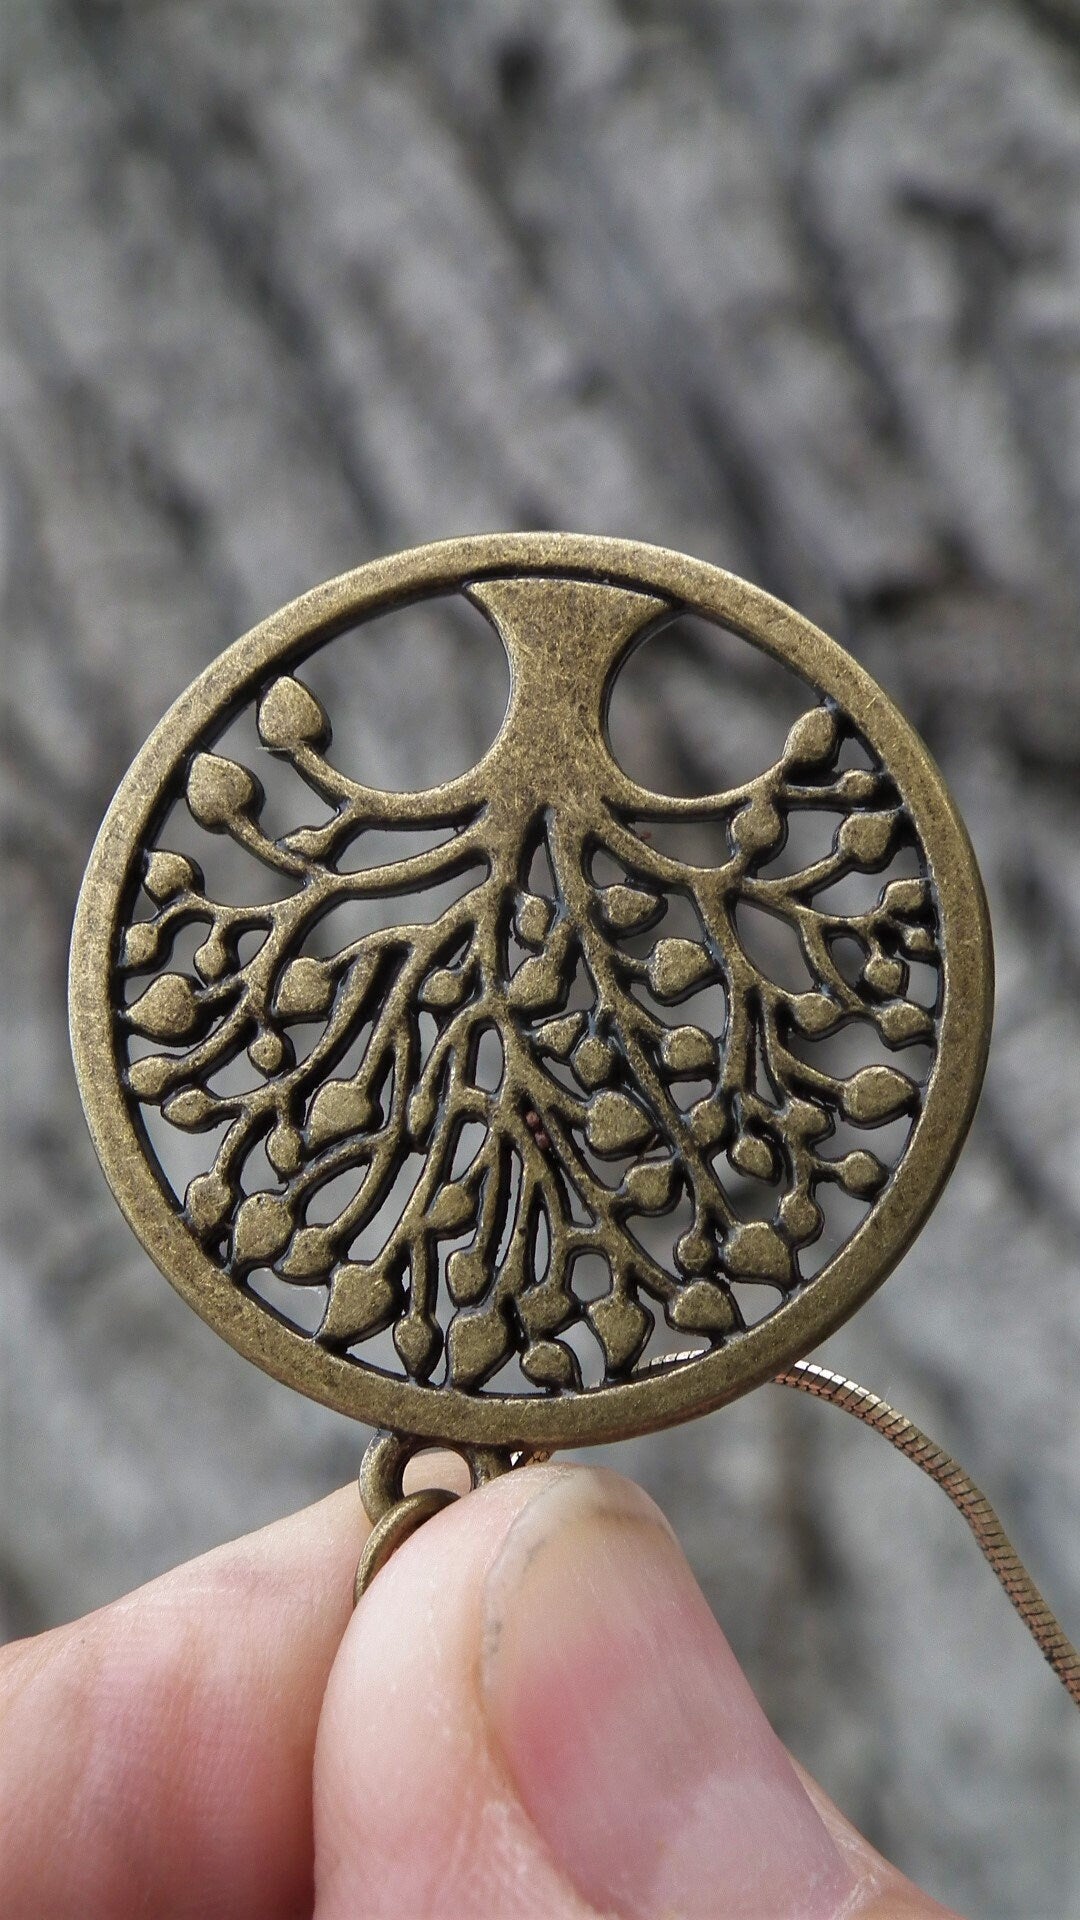 Bronze Tree of life pendant